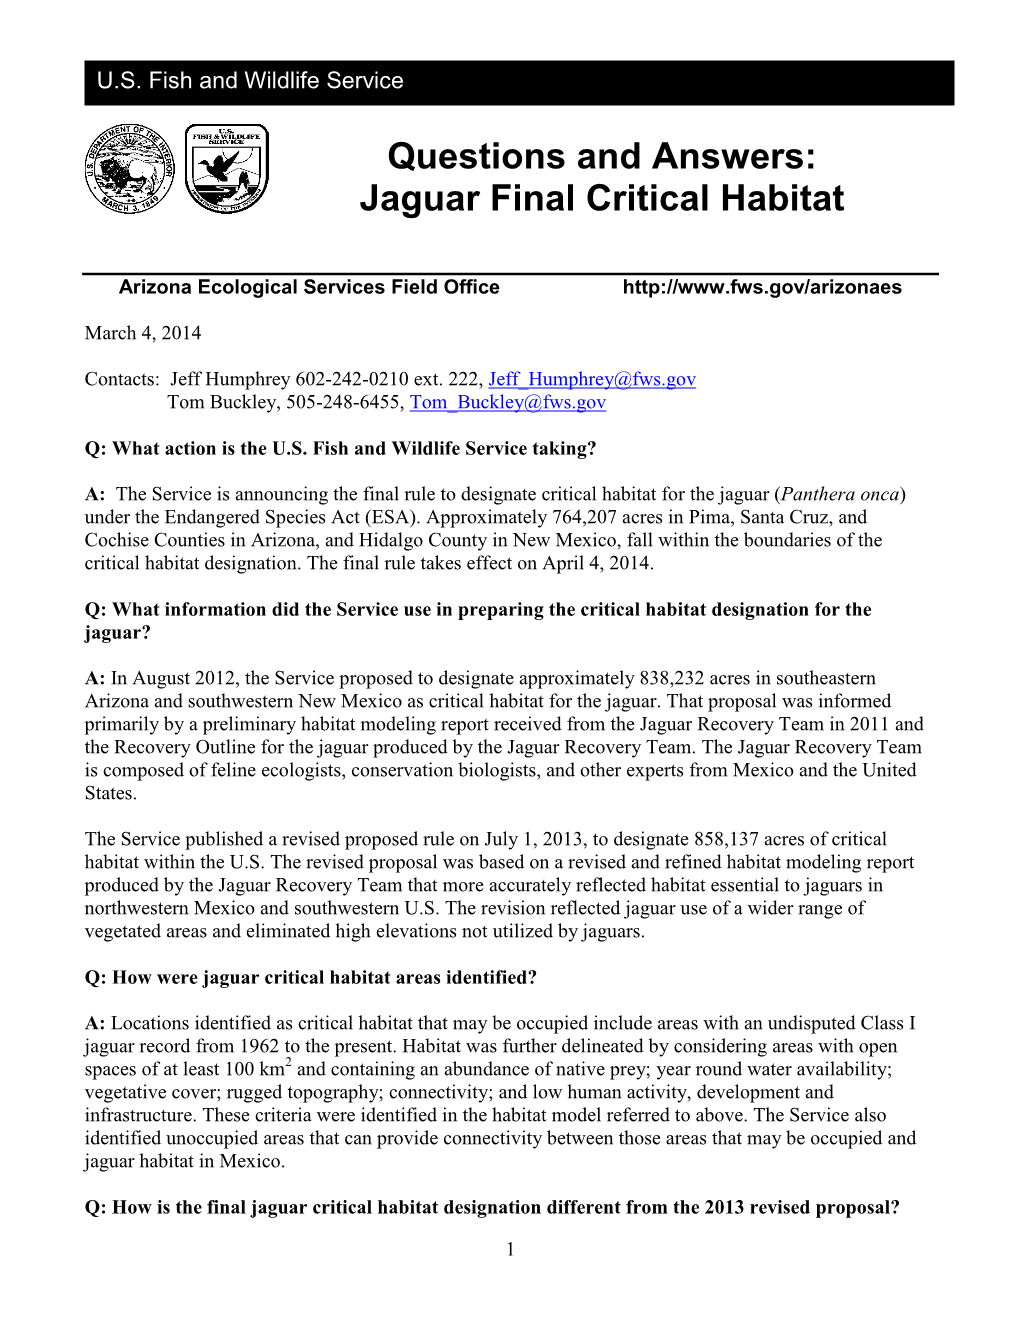 Jaguar Final Critical Habitat